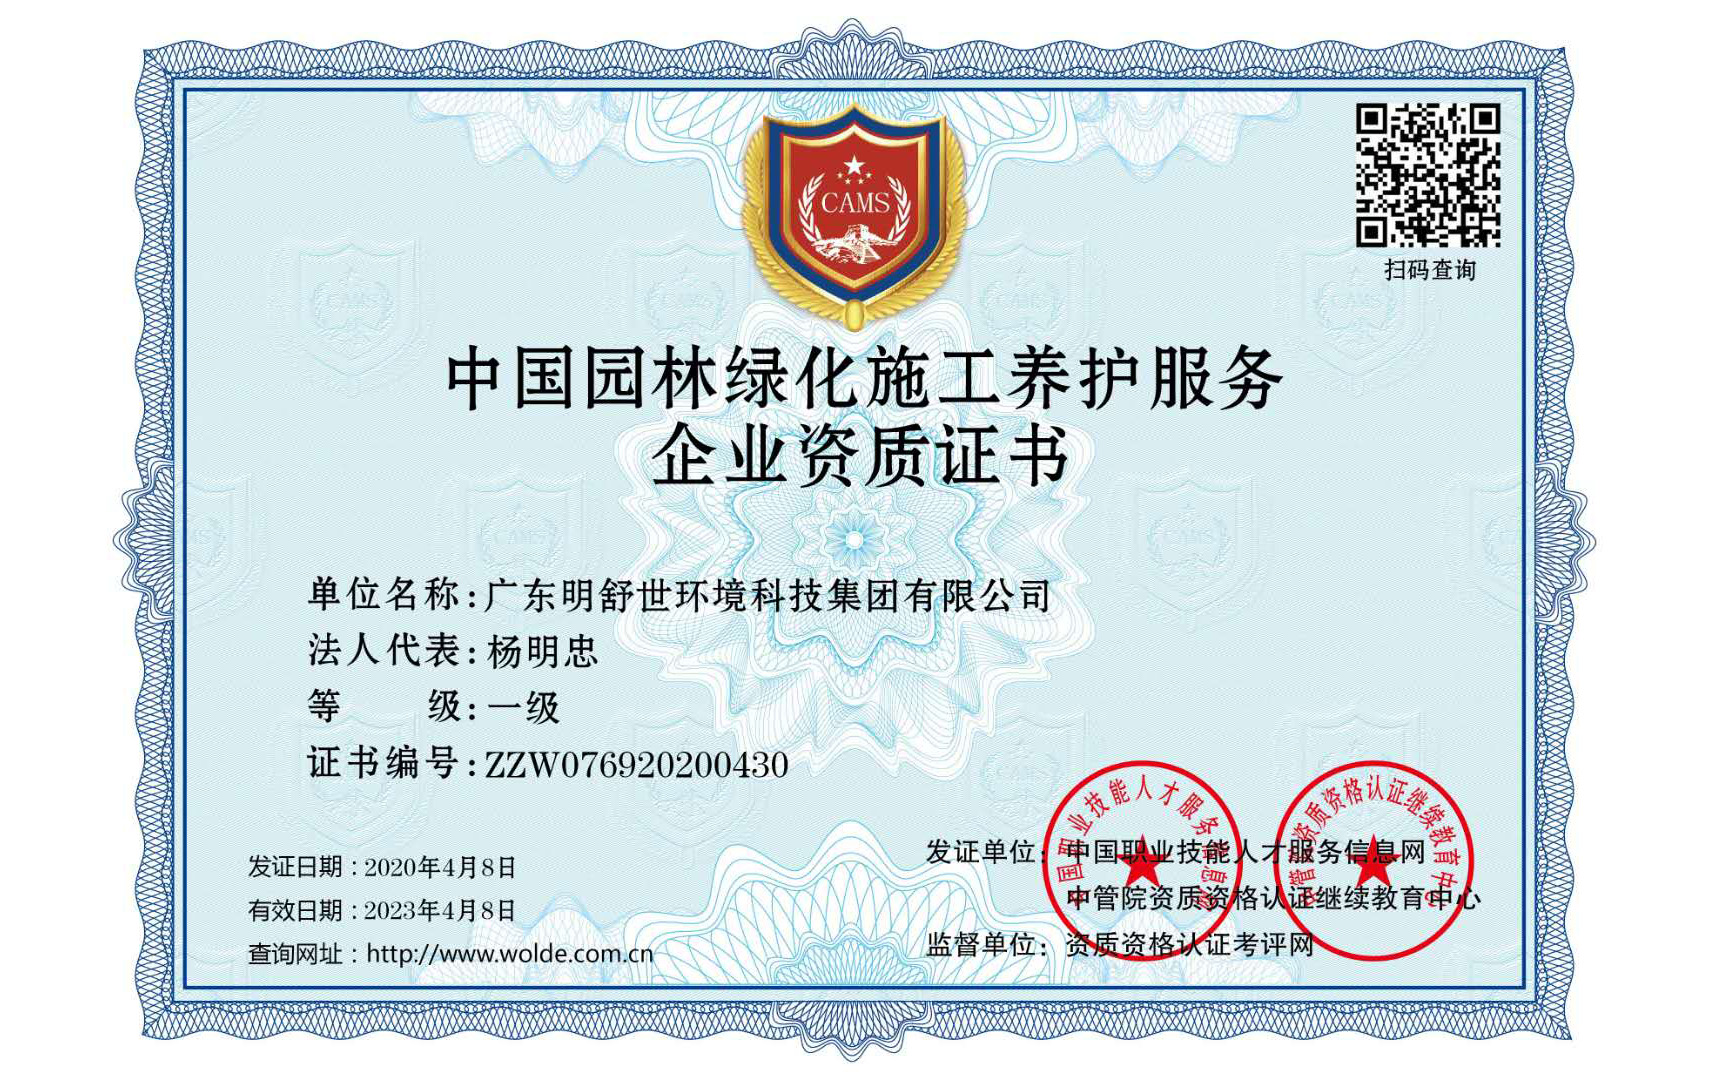 園(yuan)林綠化一級企業資質(zhi)證書